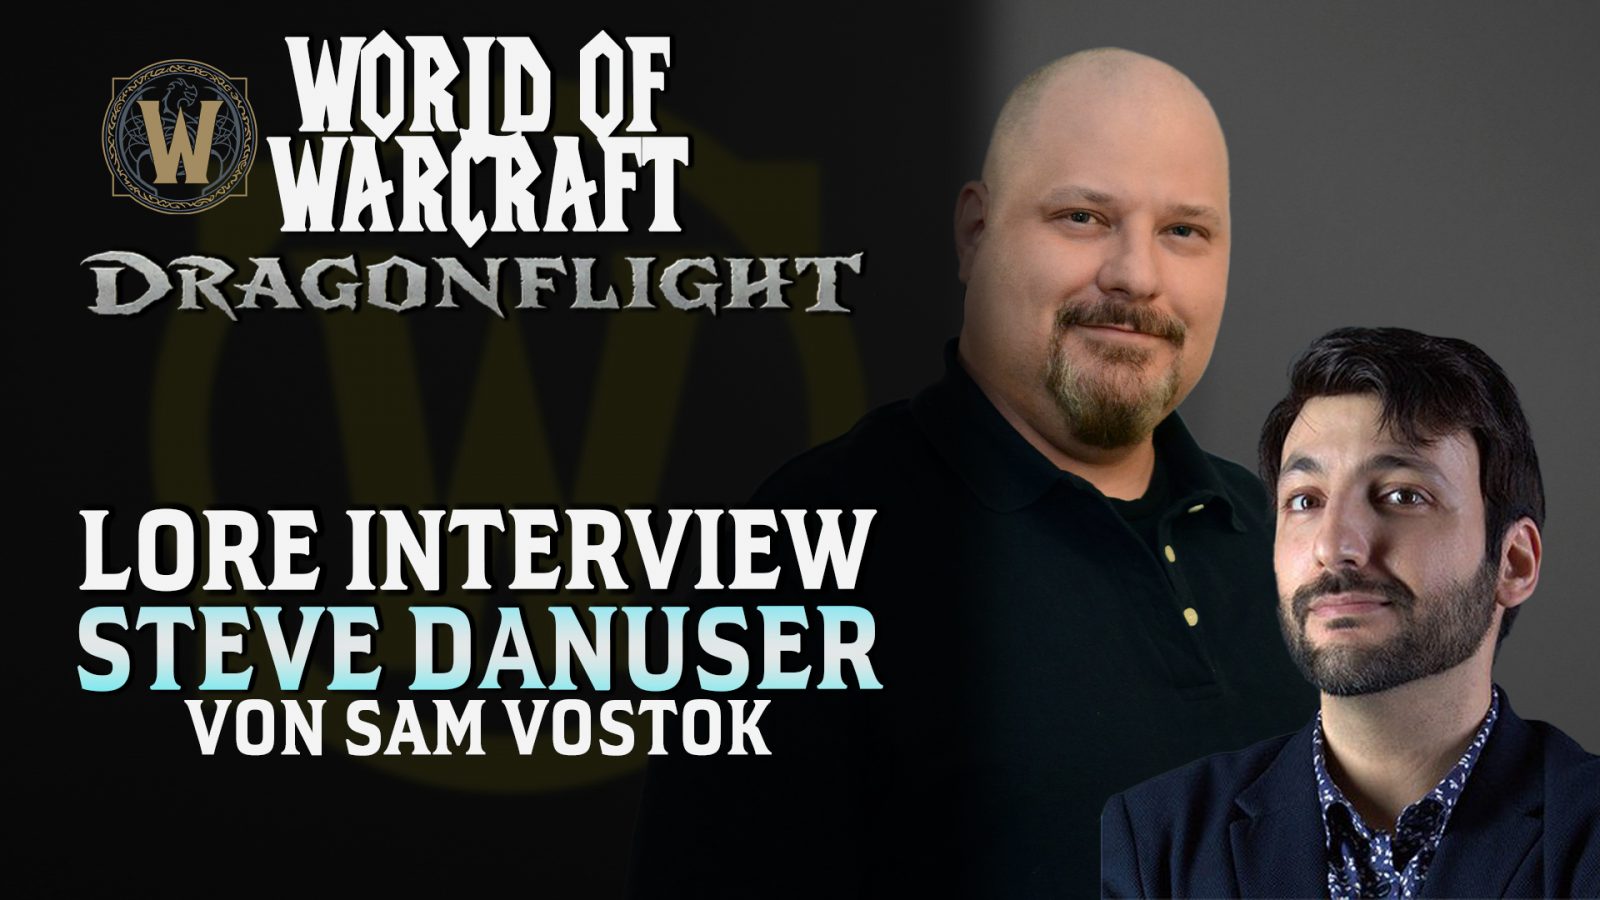 Steve Danuser Interview von Sam Vostok